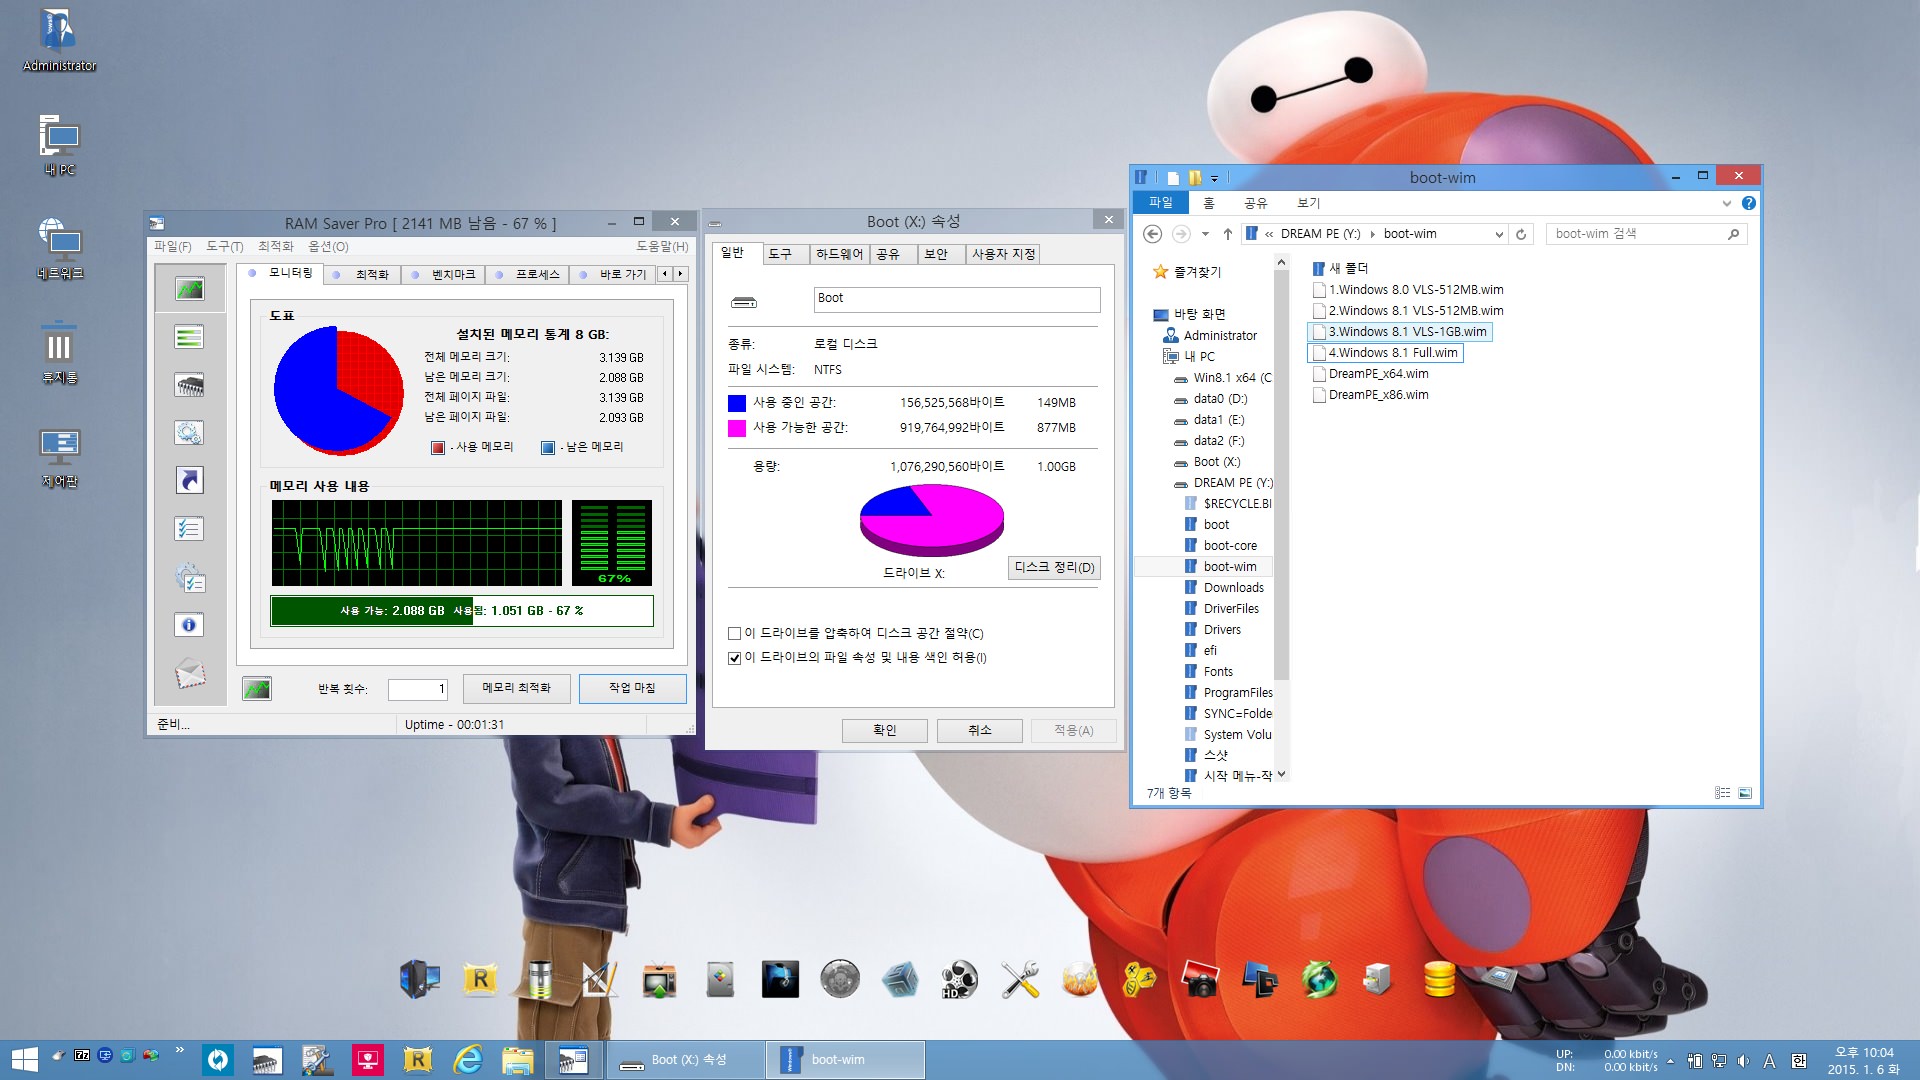 4.Windows 8.1 Full.jpg